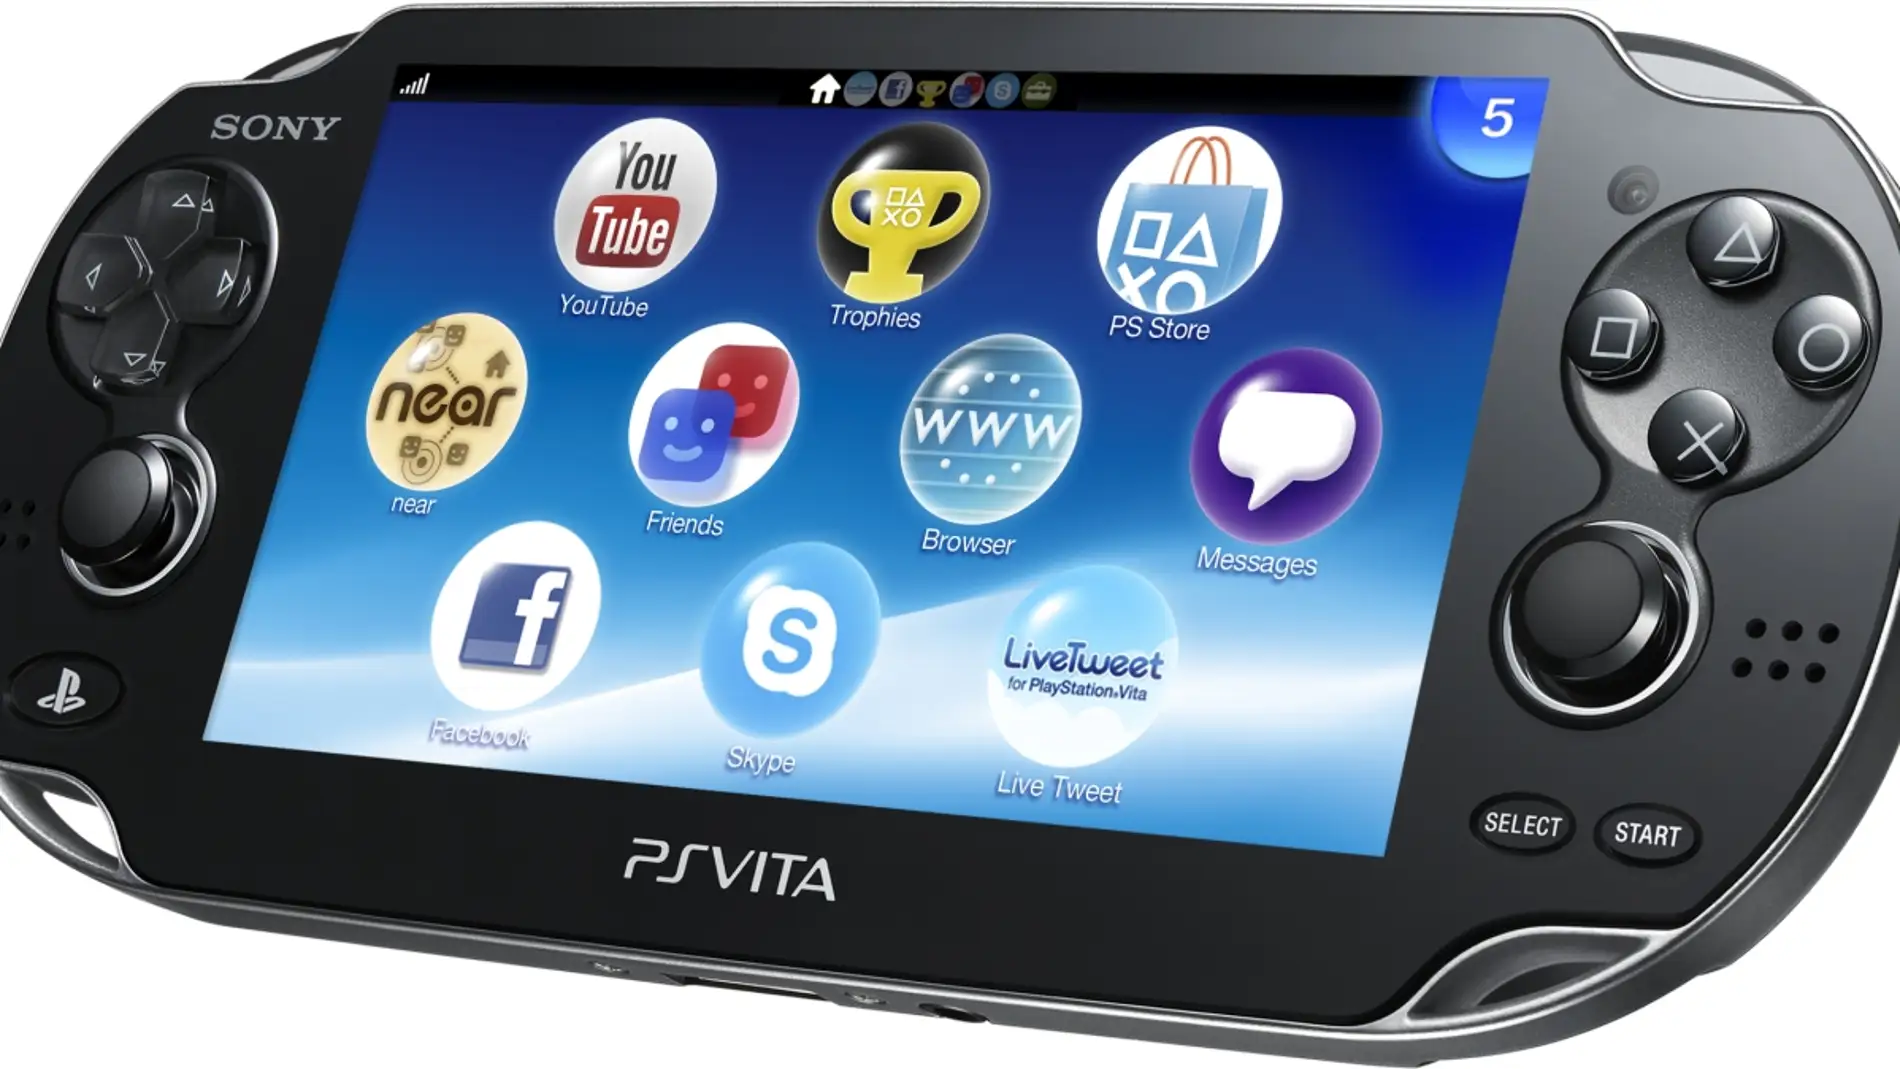 Un exdirectivo de PlayStation cree que PS Vita no tuvo el apoyo de Sony que  merecía - Vandal